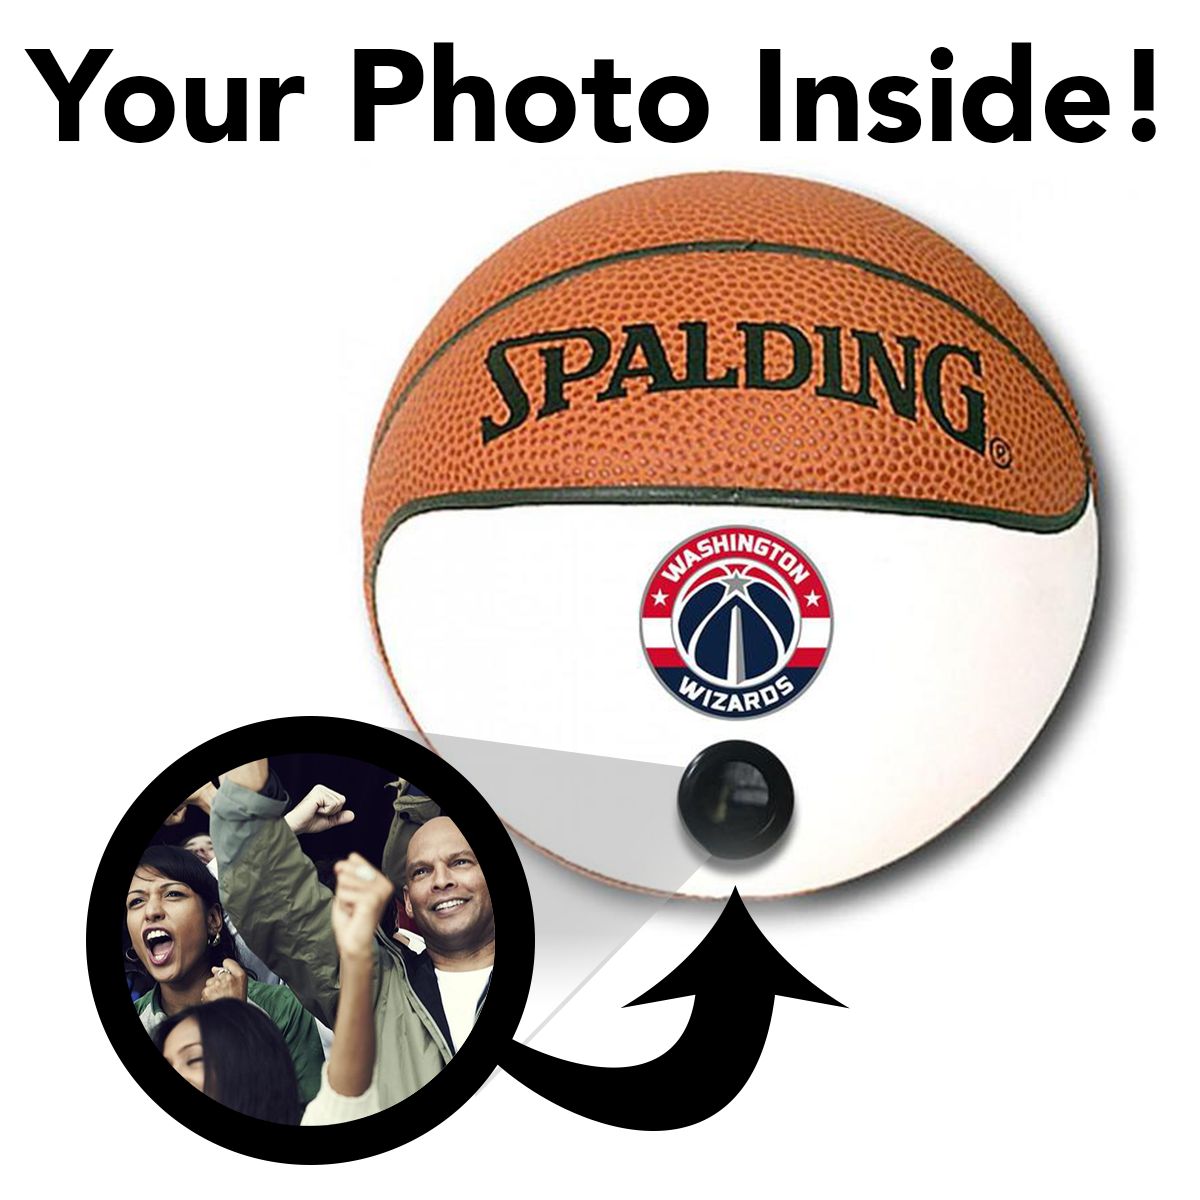 Wizards NBA Collectible Miniature Basketball - Picture Inside - FANZ Collectibles - Fanz Collectibles